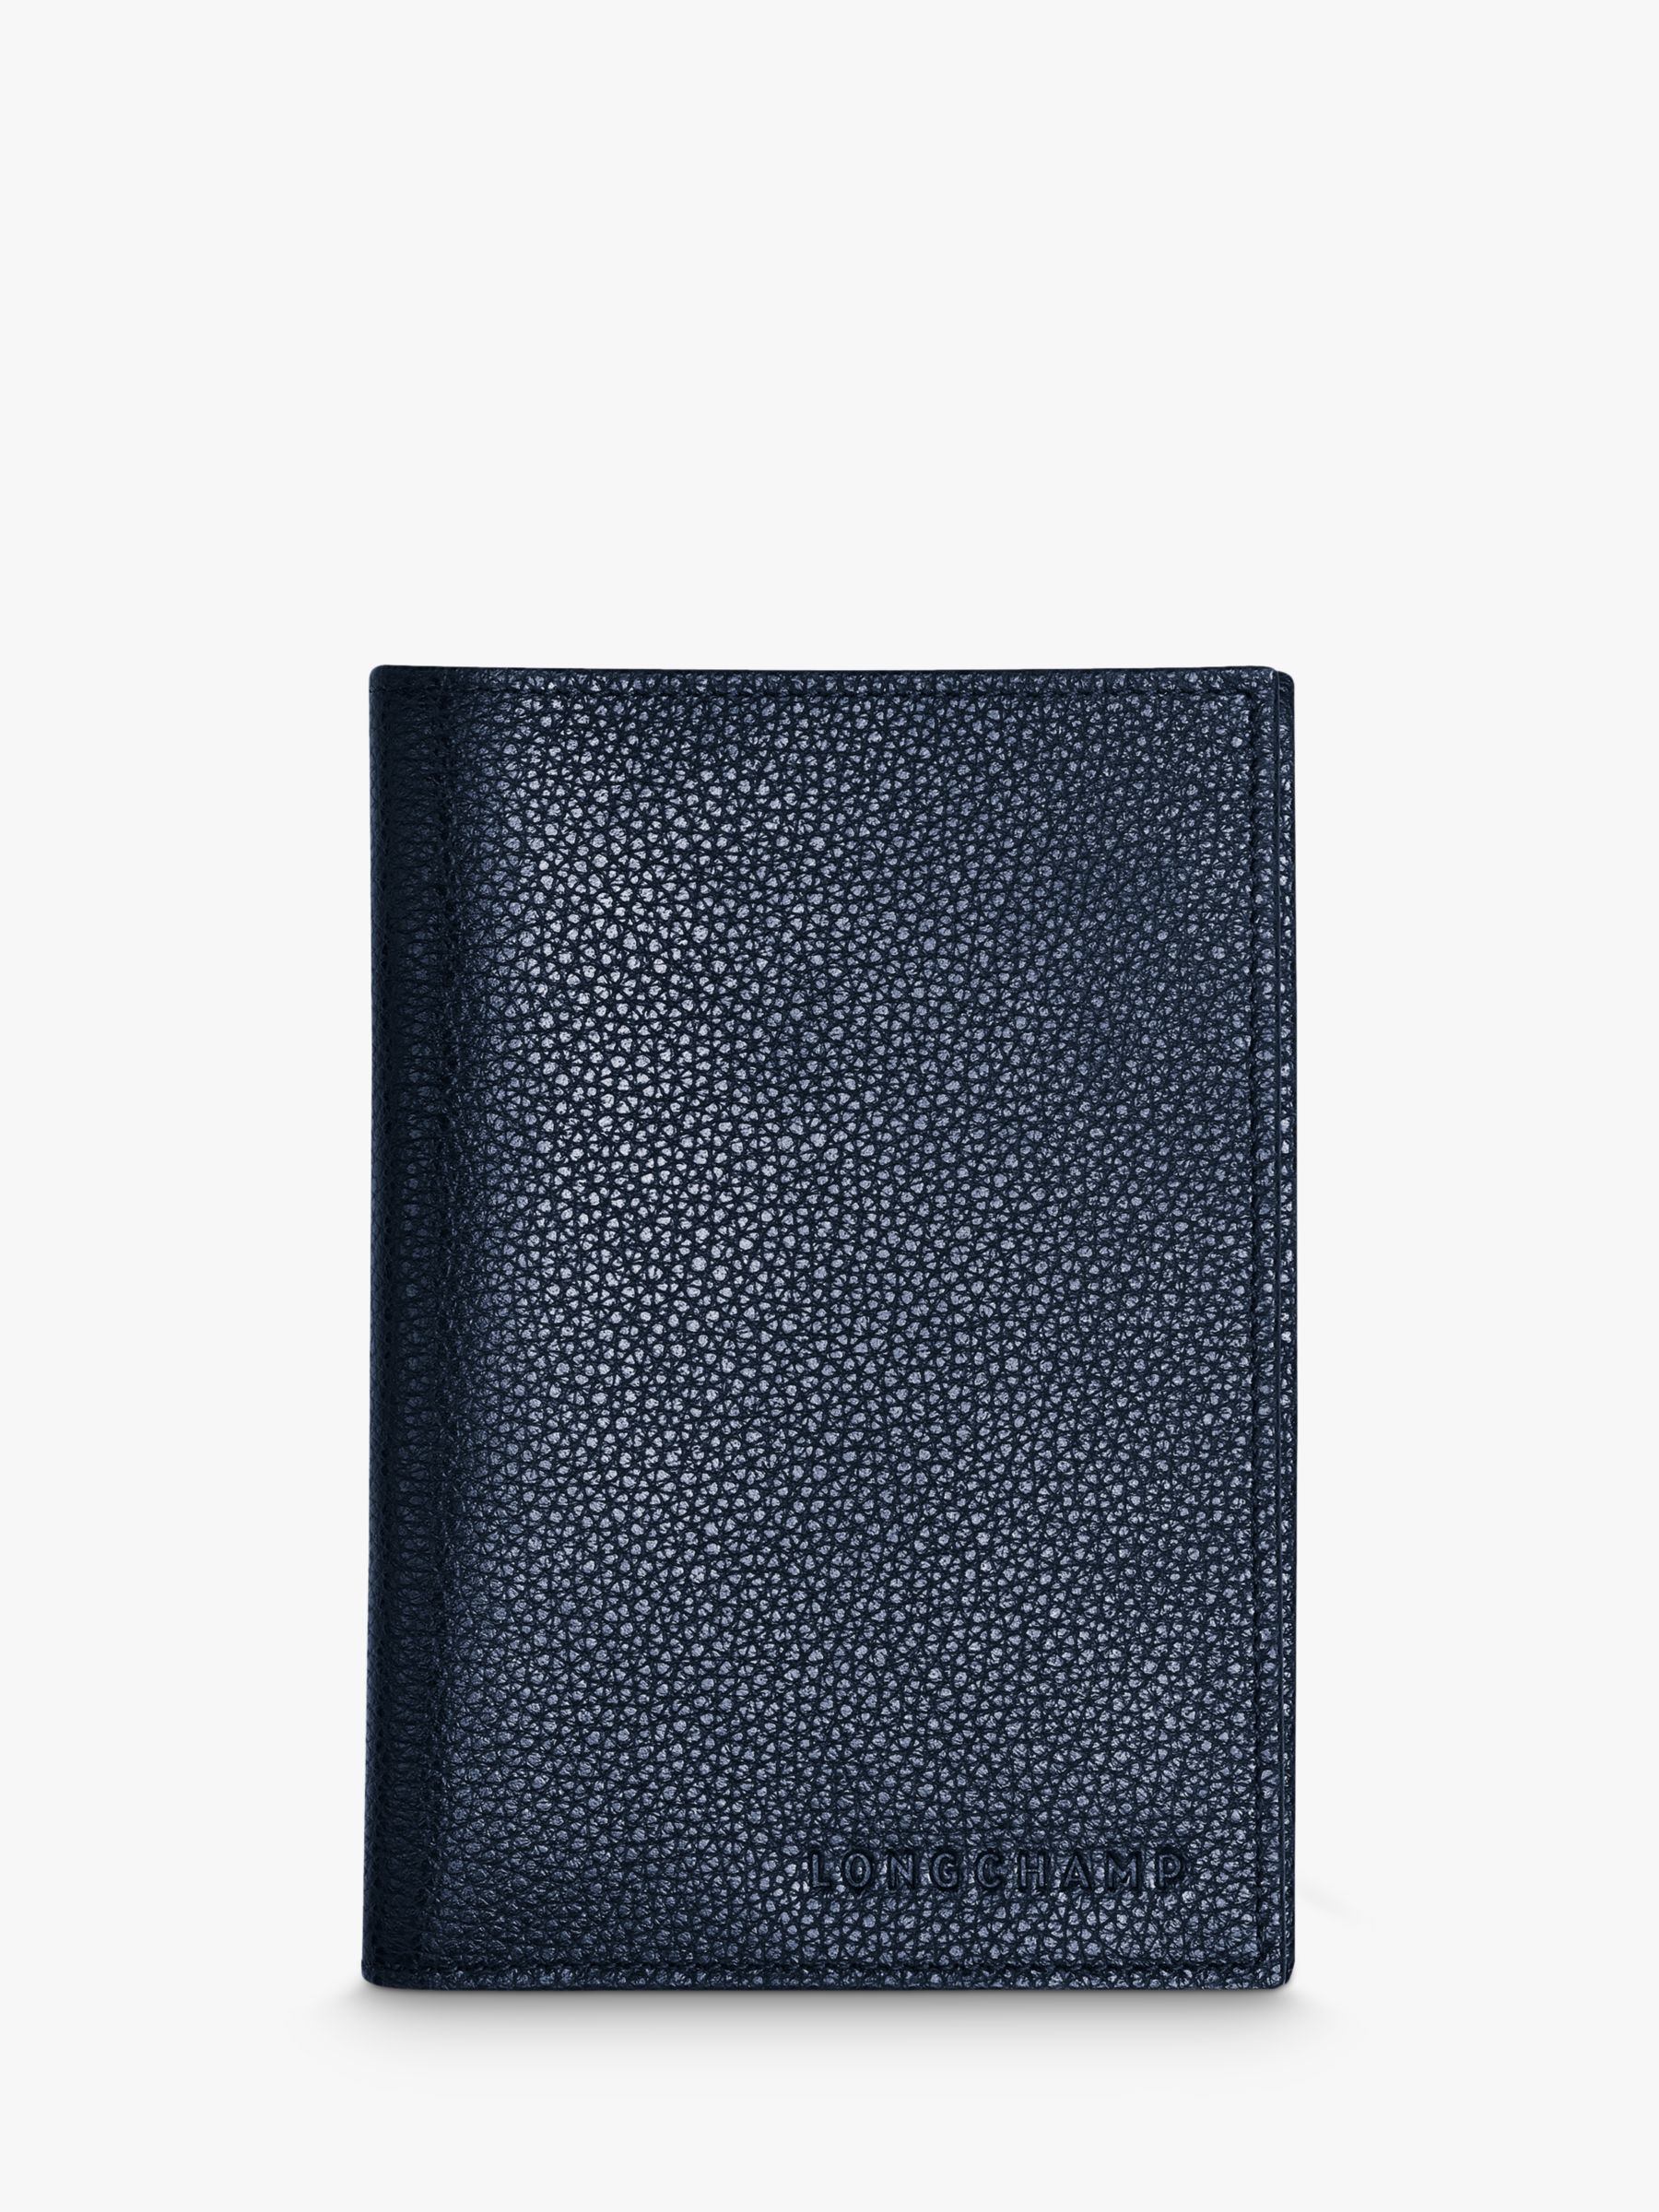 Longchamp Le Foulonné Leather Passport Cover at John Lewis & Partners